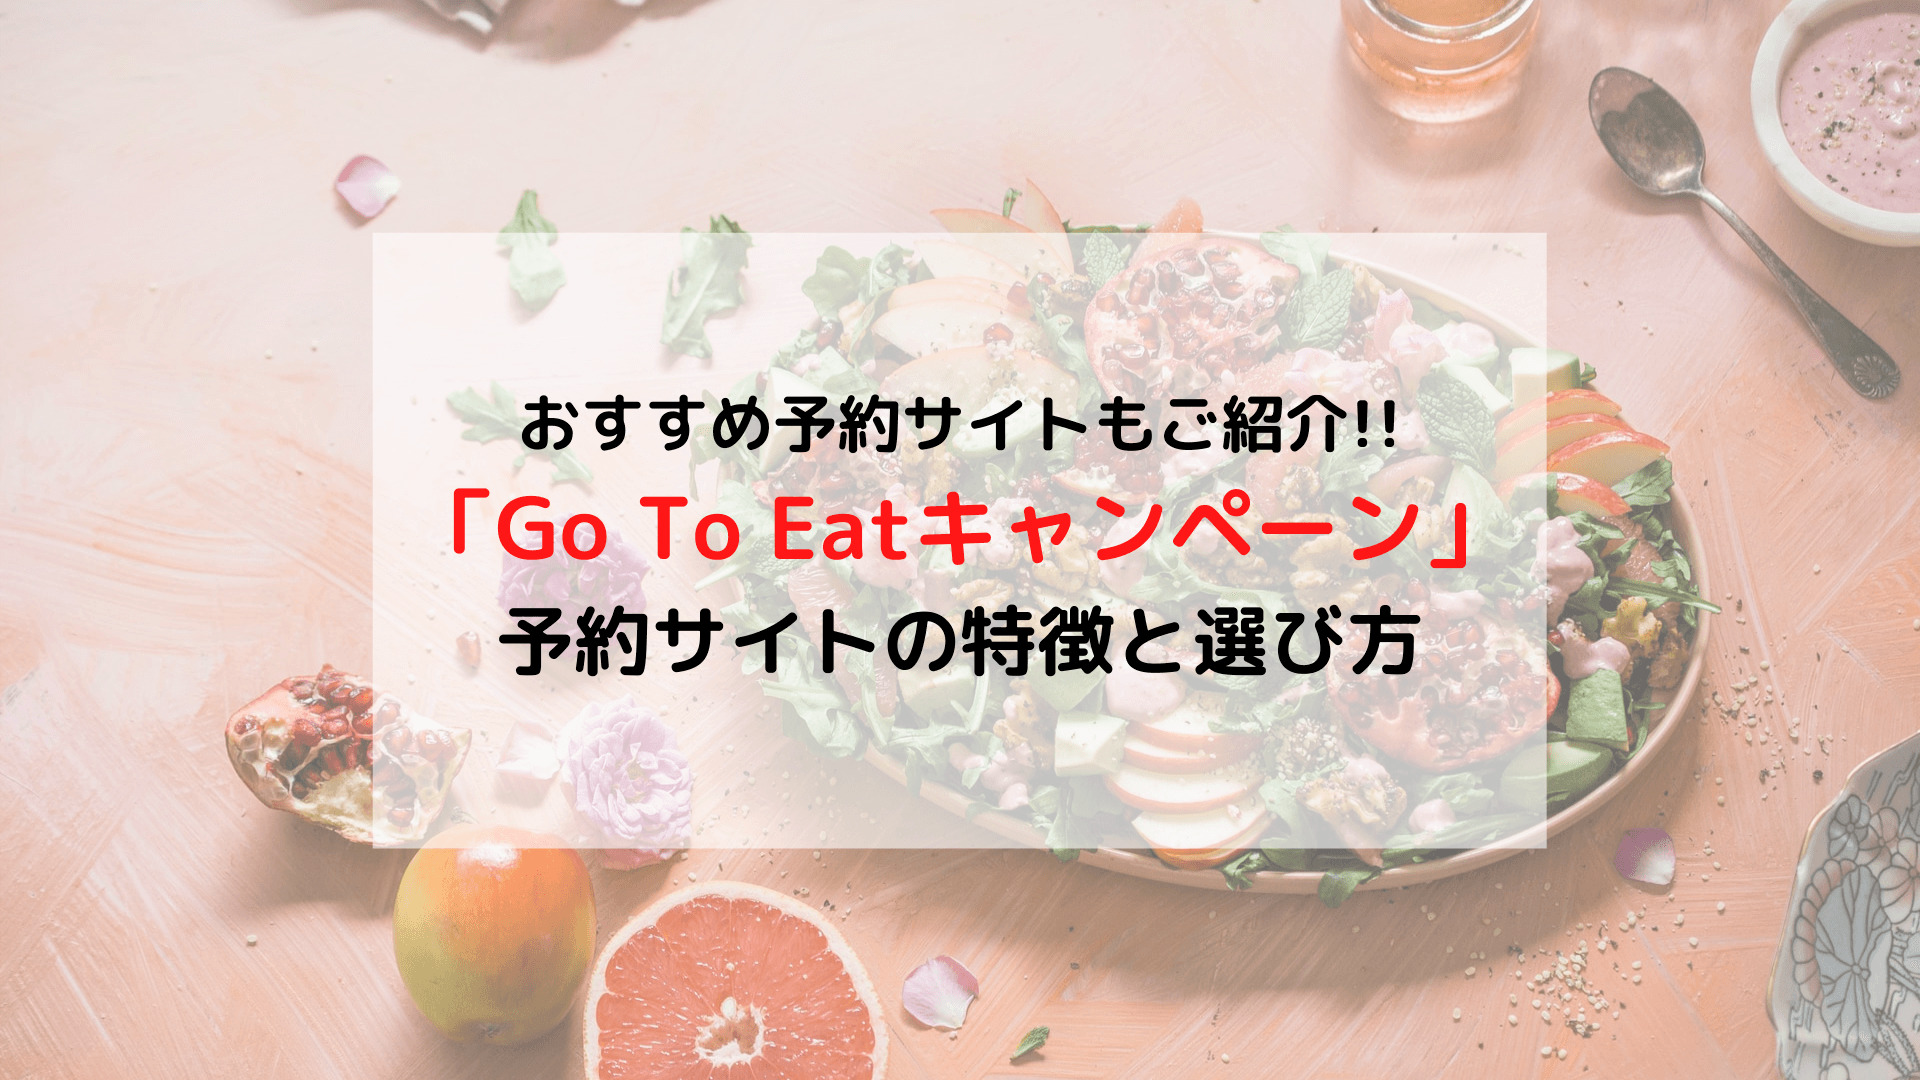 「Go To Eat キャンペーン」とは 予約サイトの特徴や選び方まとめ